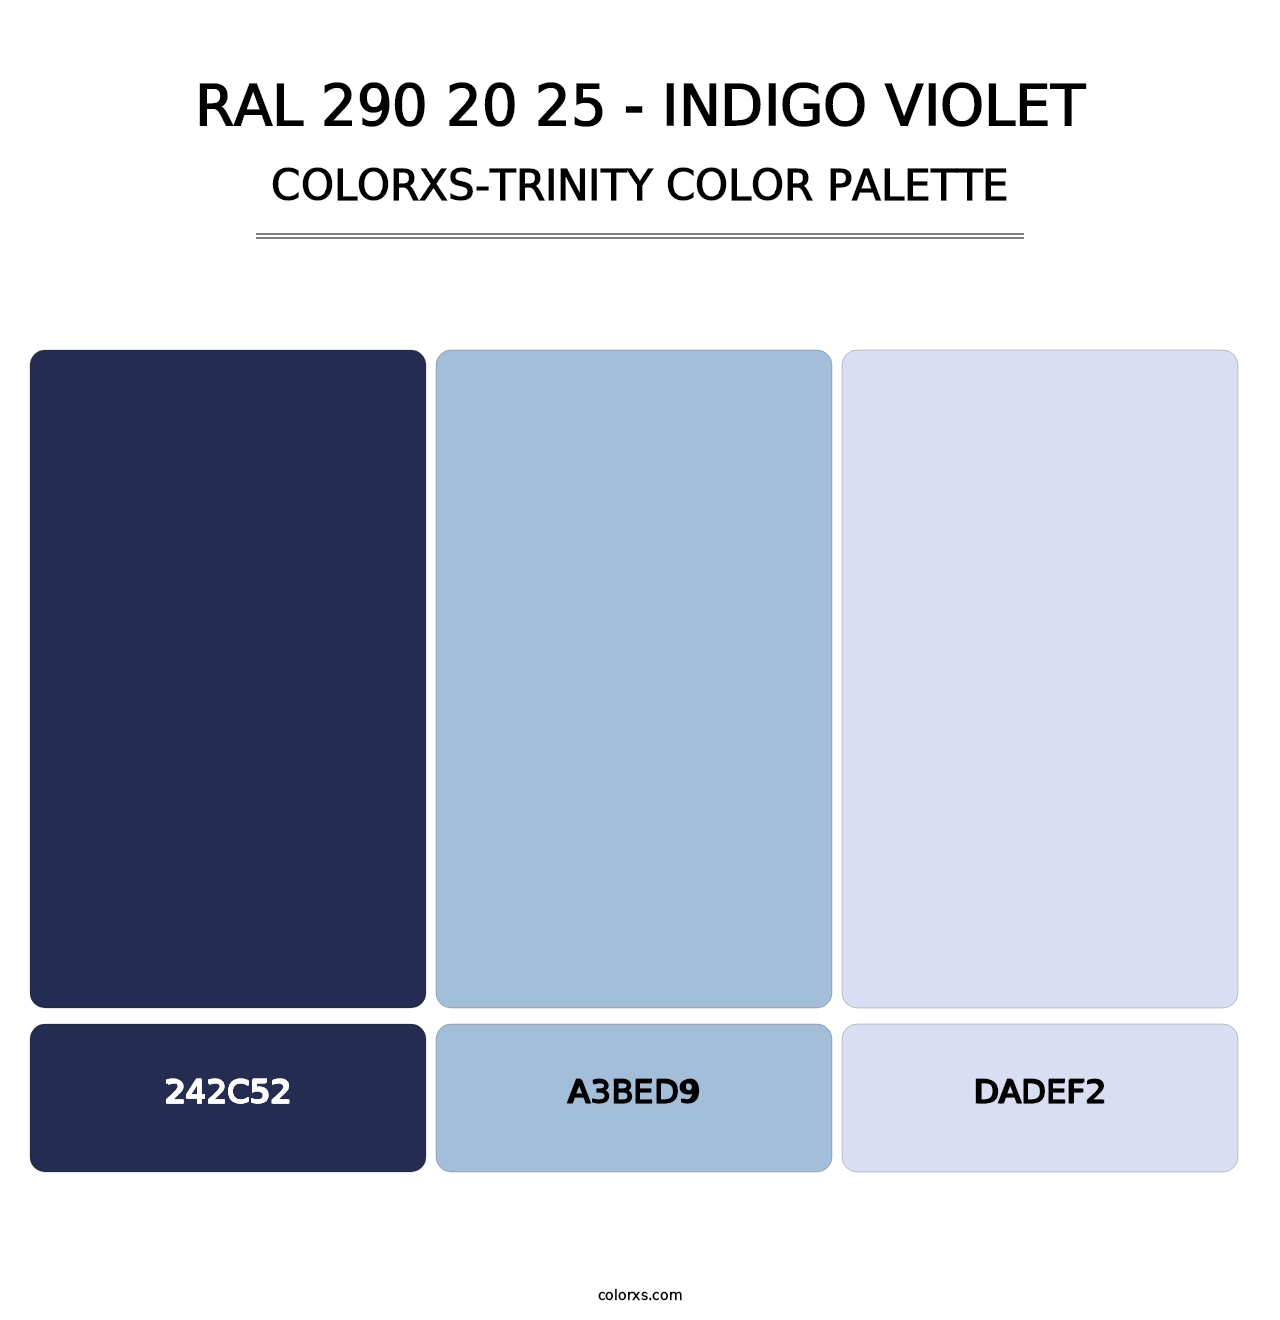 RAL 290 20 25 - Indigo Violet - Colorxs Trinity Palette